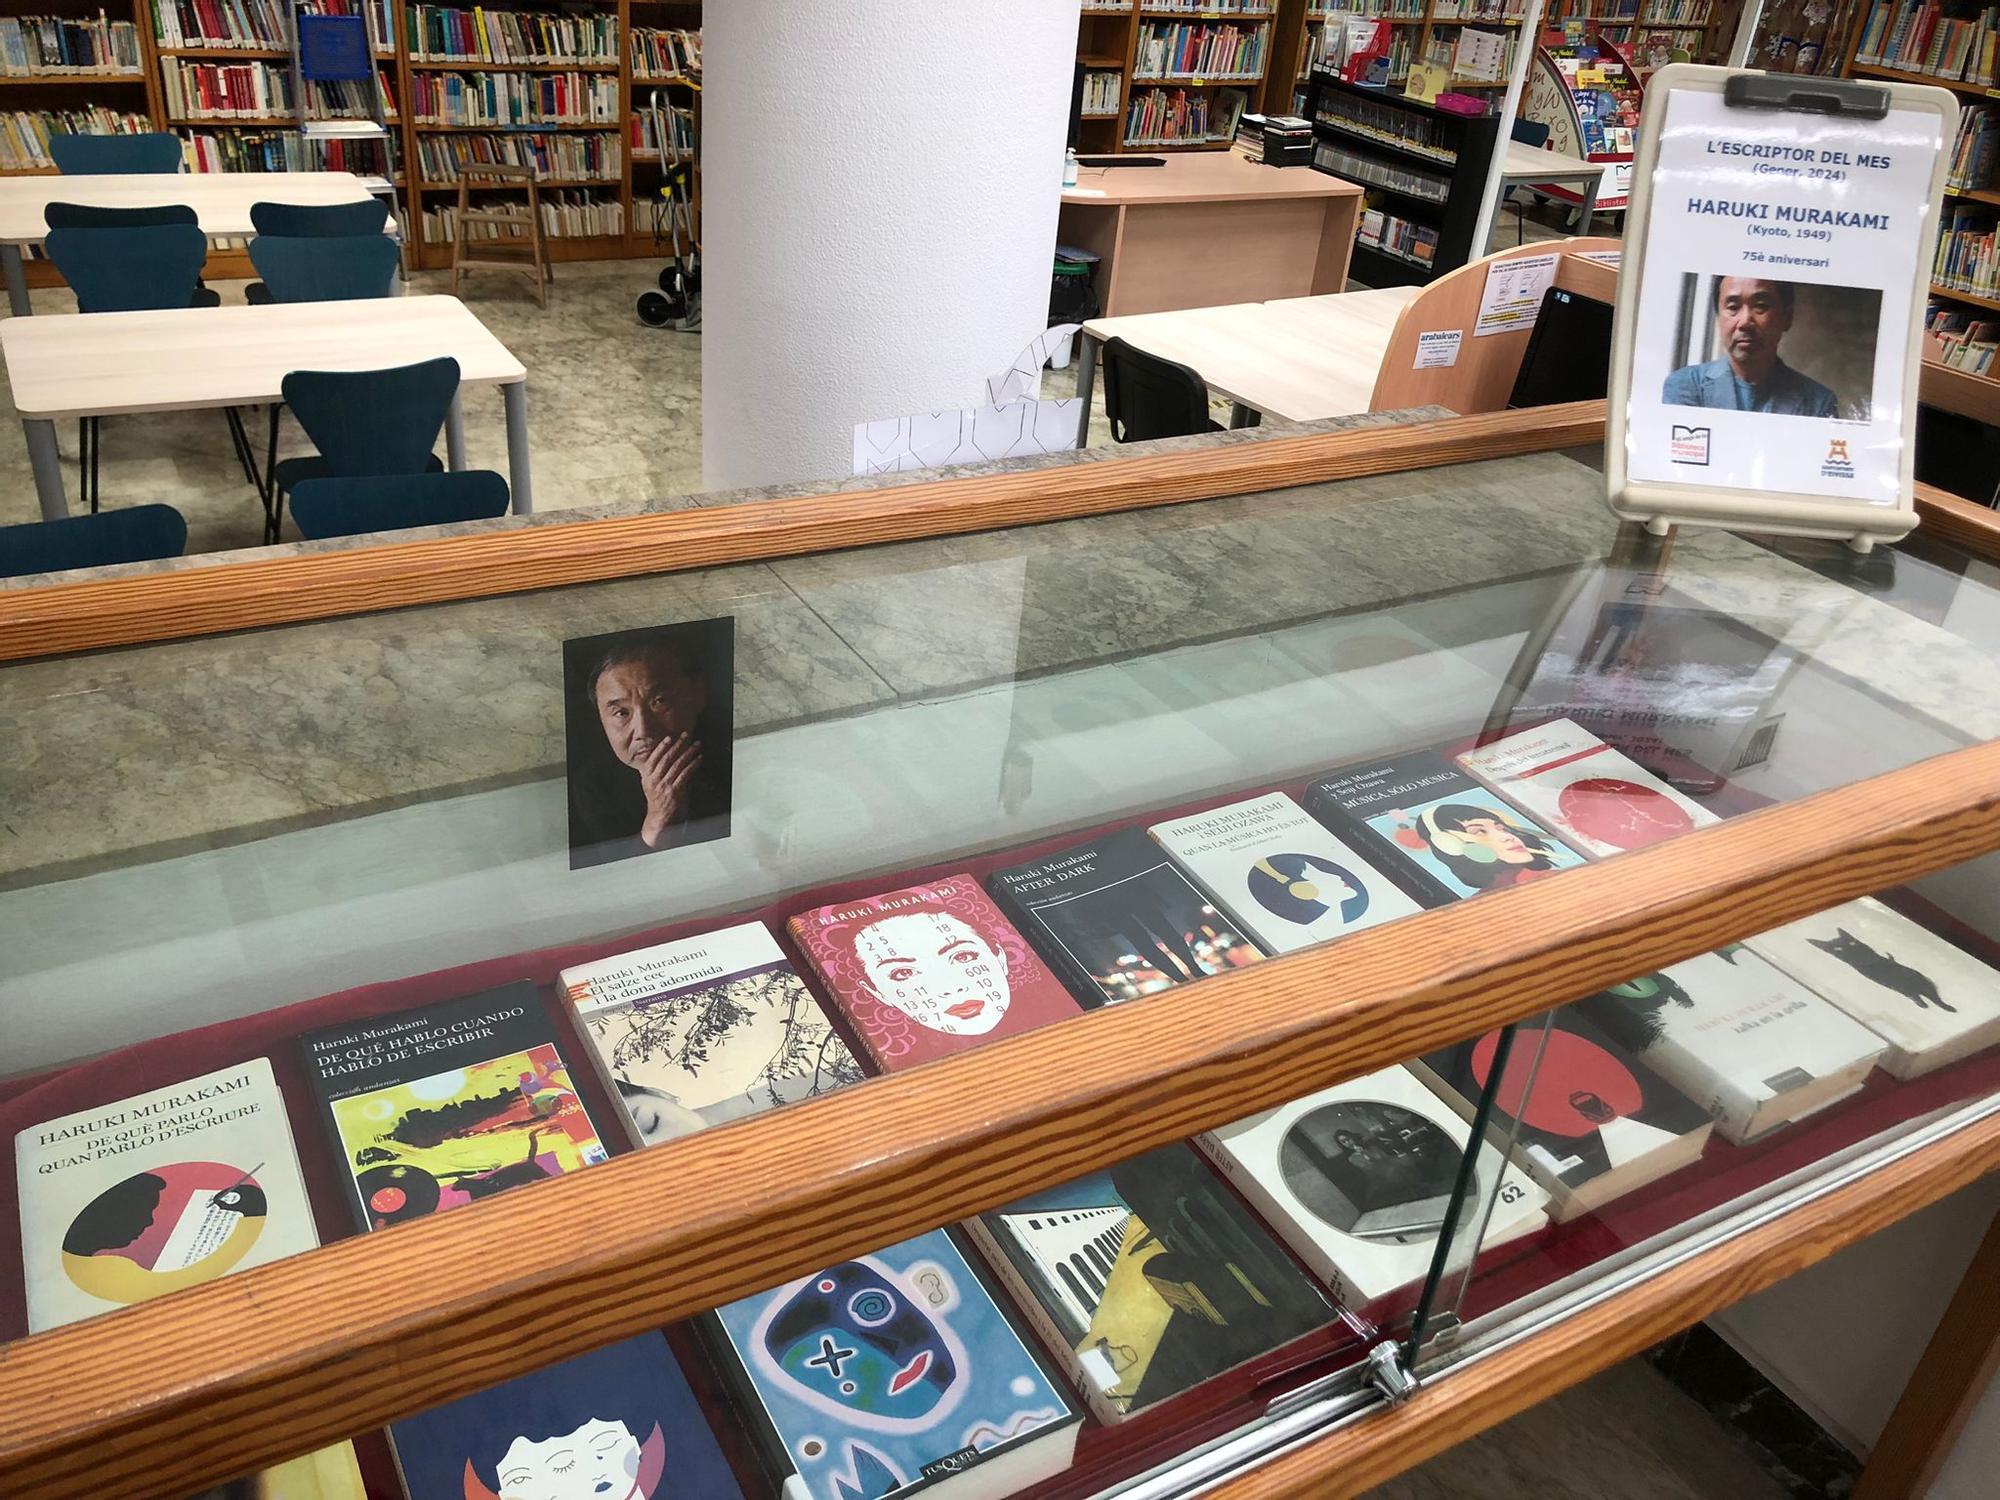 Exposició de llibres de l'autor Haruki Murakami a la Biblioteca de Can Ventosa.